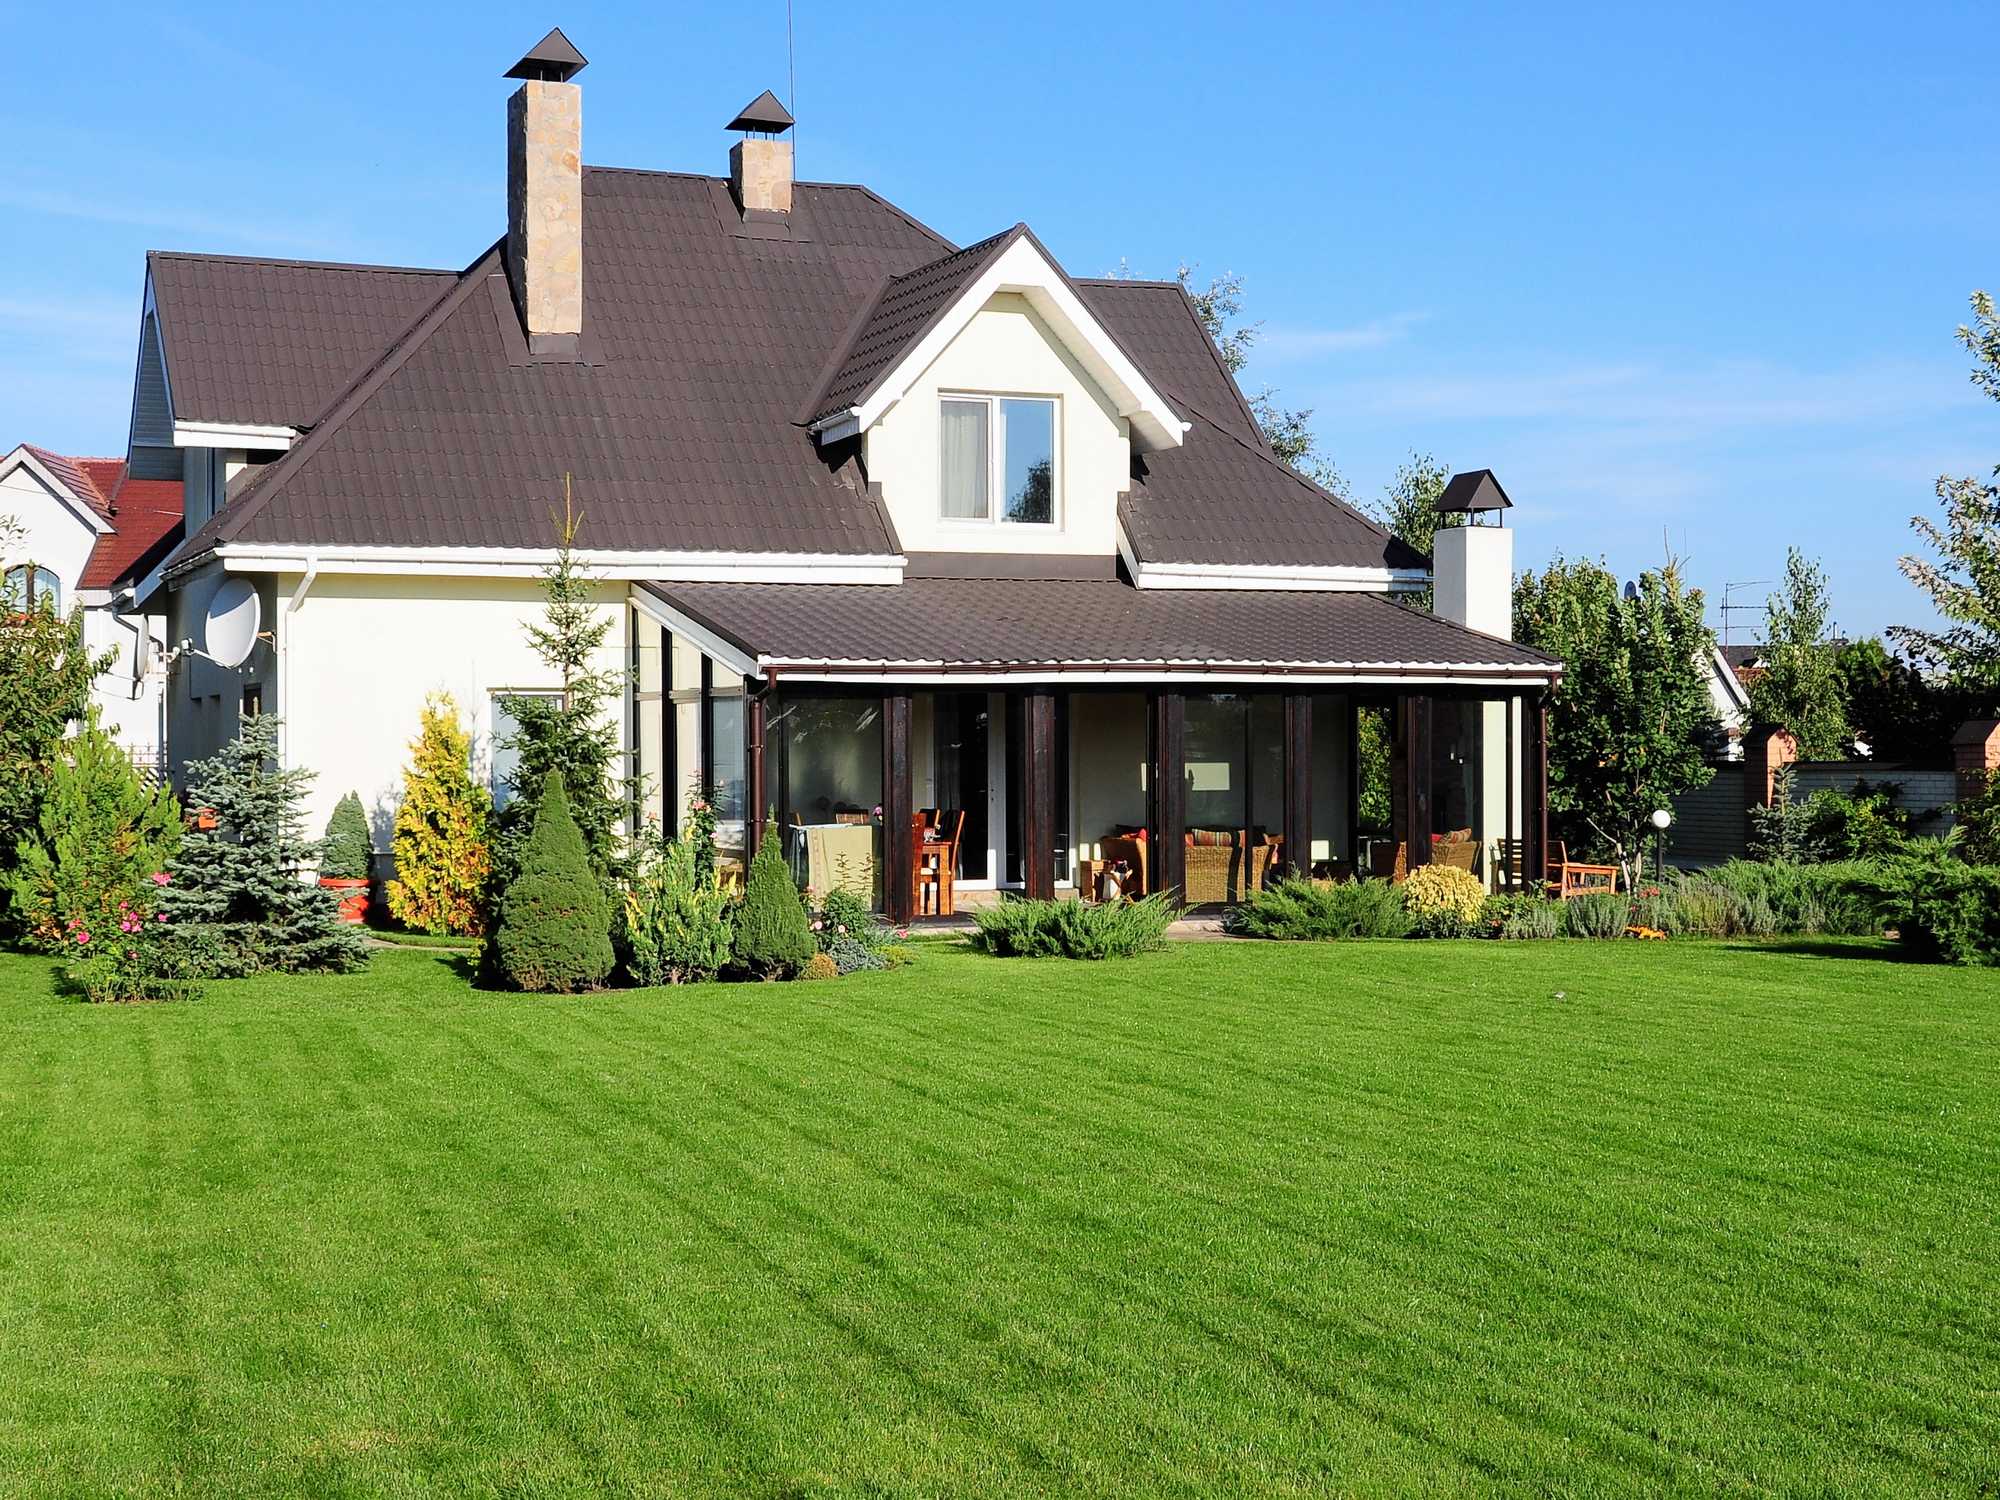 Фото земельных участков с домом. Загородный дом лужайка. Загородный дом с газоном. Красивый дом с участком. Красивый дом с газоном.